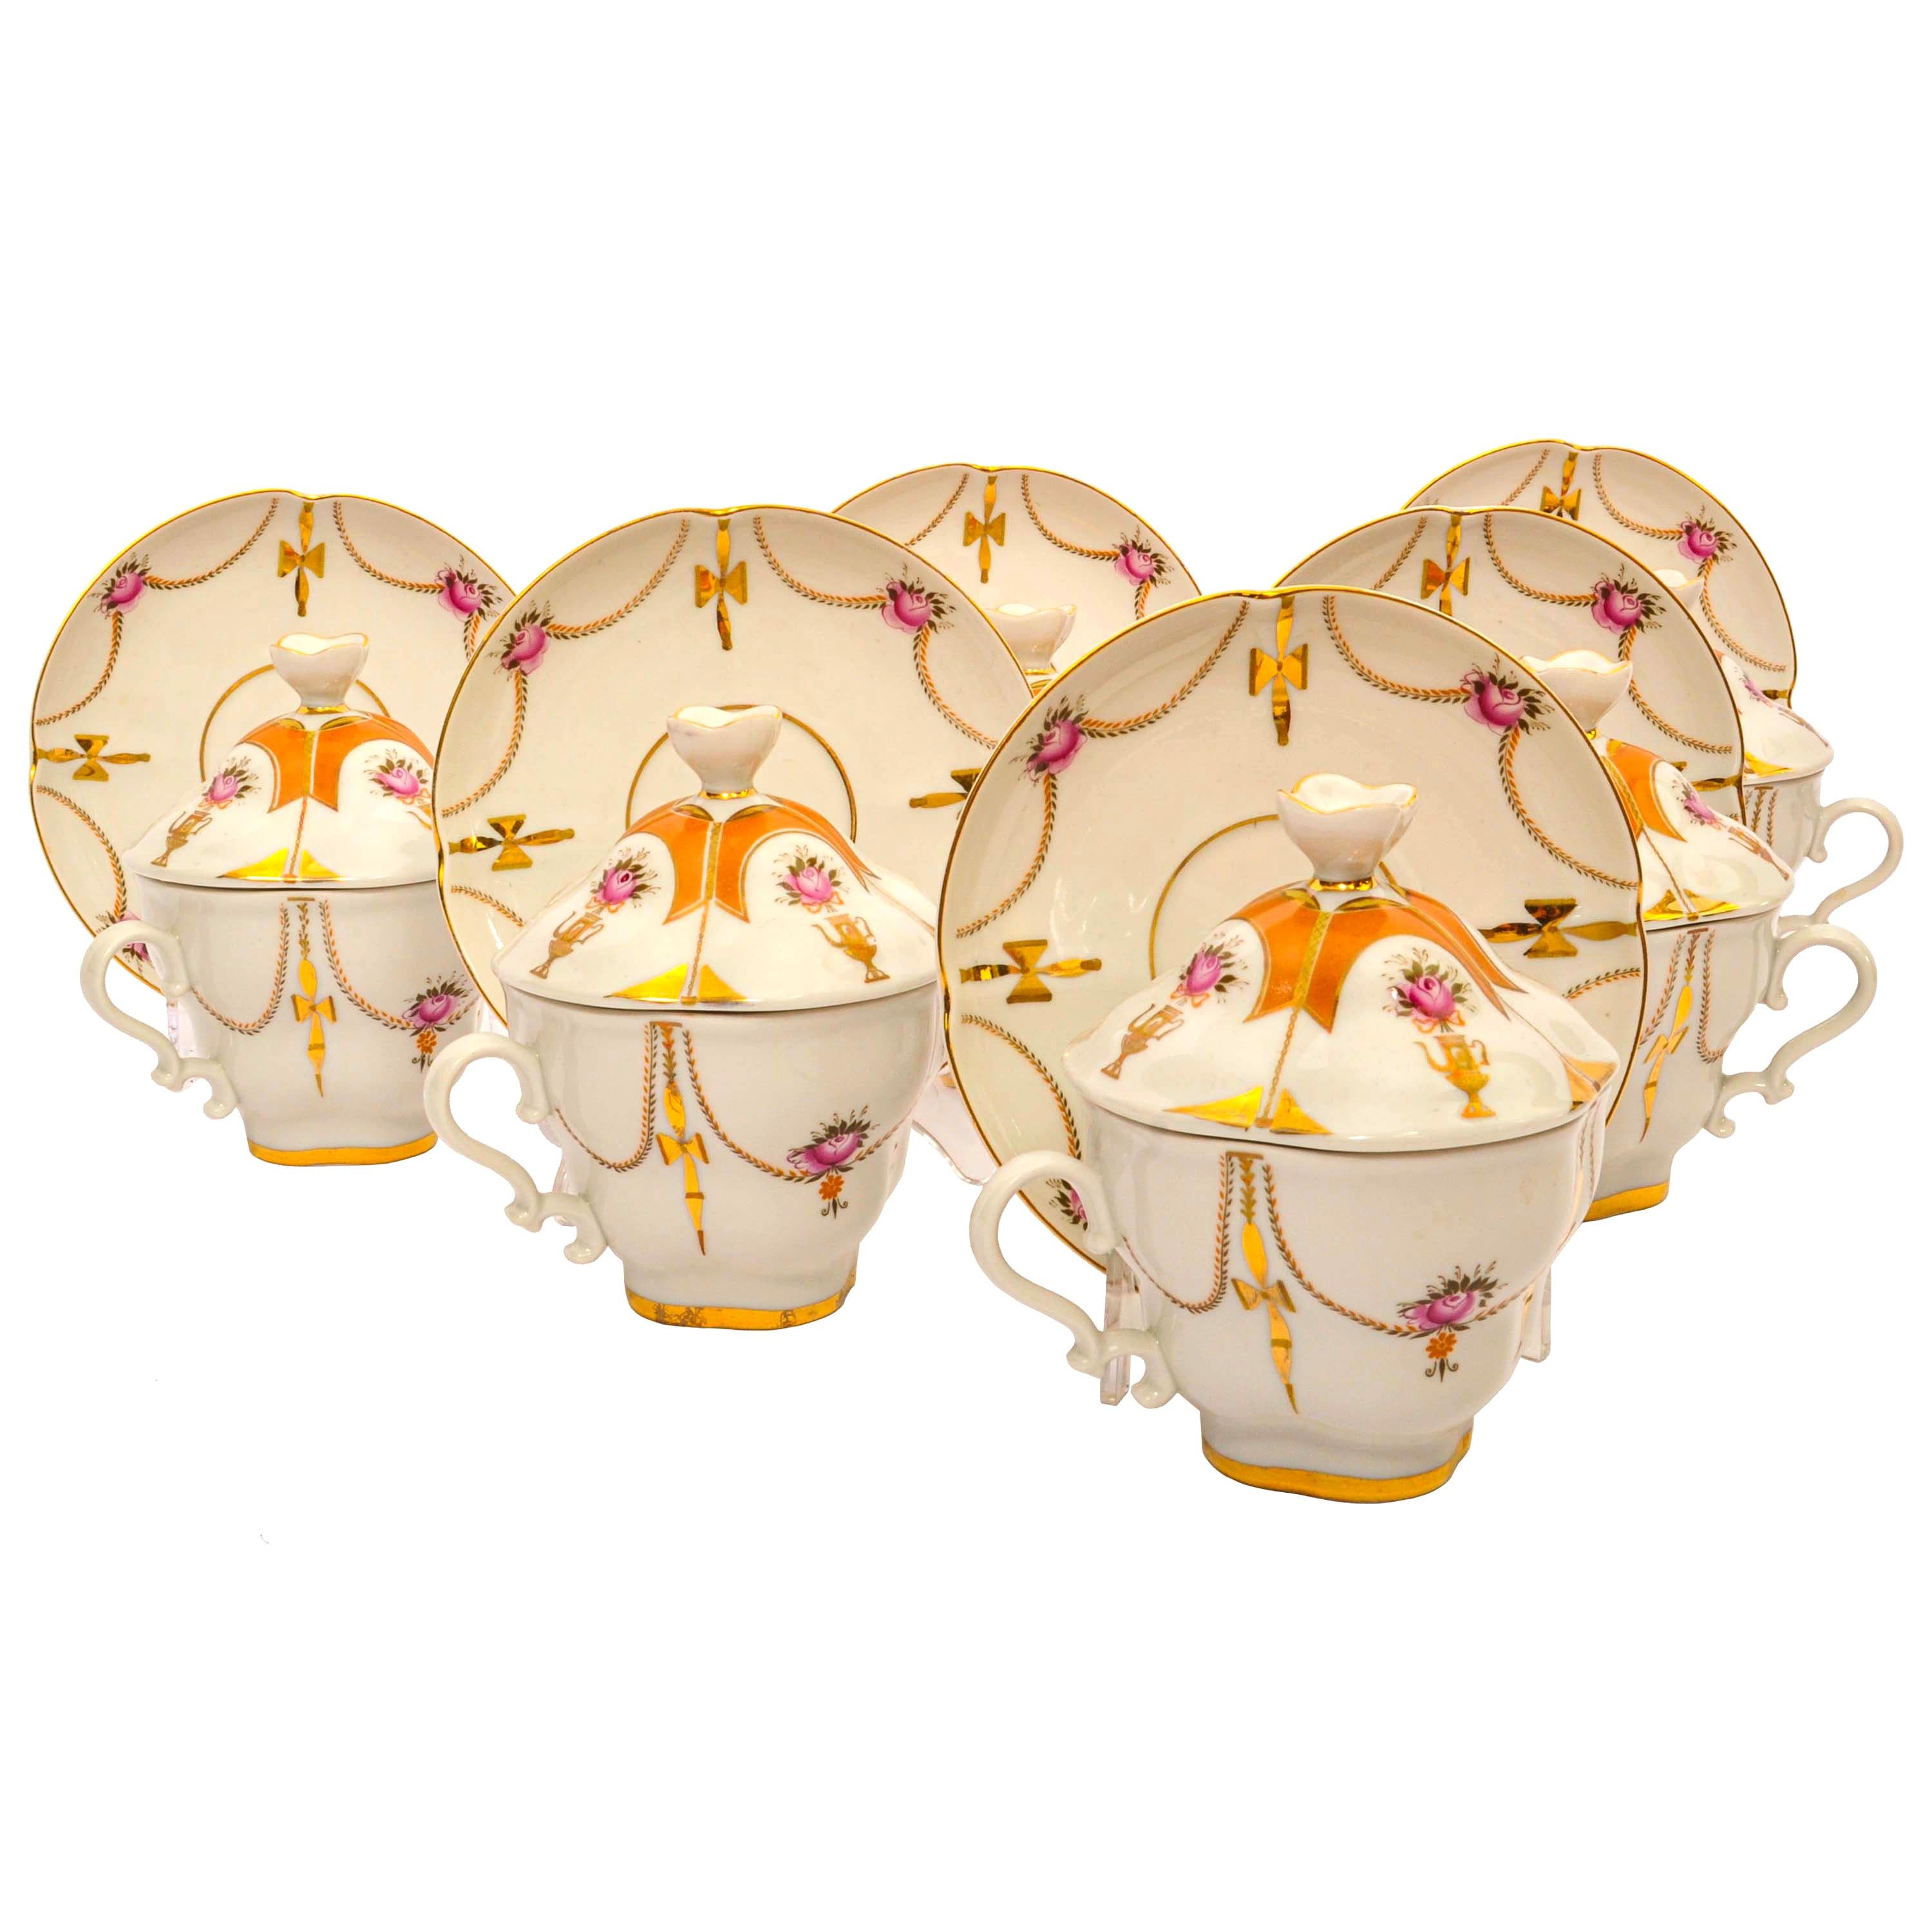 Vintage-Set von sechs kaiserlichen Lomonossow handbemalte vergoldete Porzellan Teetassen und Untertassen mit Deckel, bestehend aus 18 Stück. 
Das Set ist in perfektem Zustand, jede Tasse und Untertasse ist von Hand mit Girlanden und Samowaren